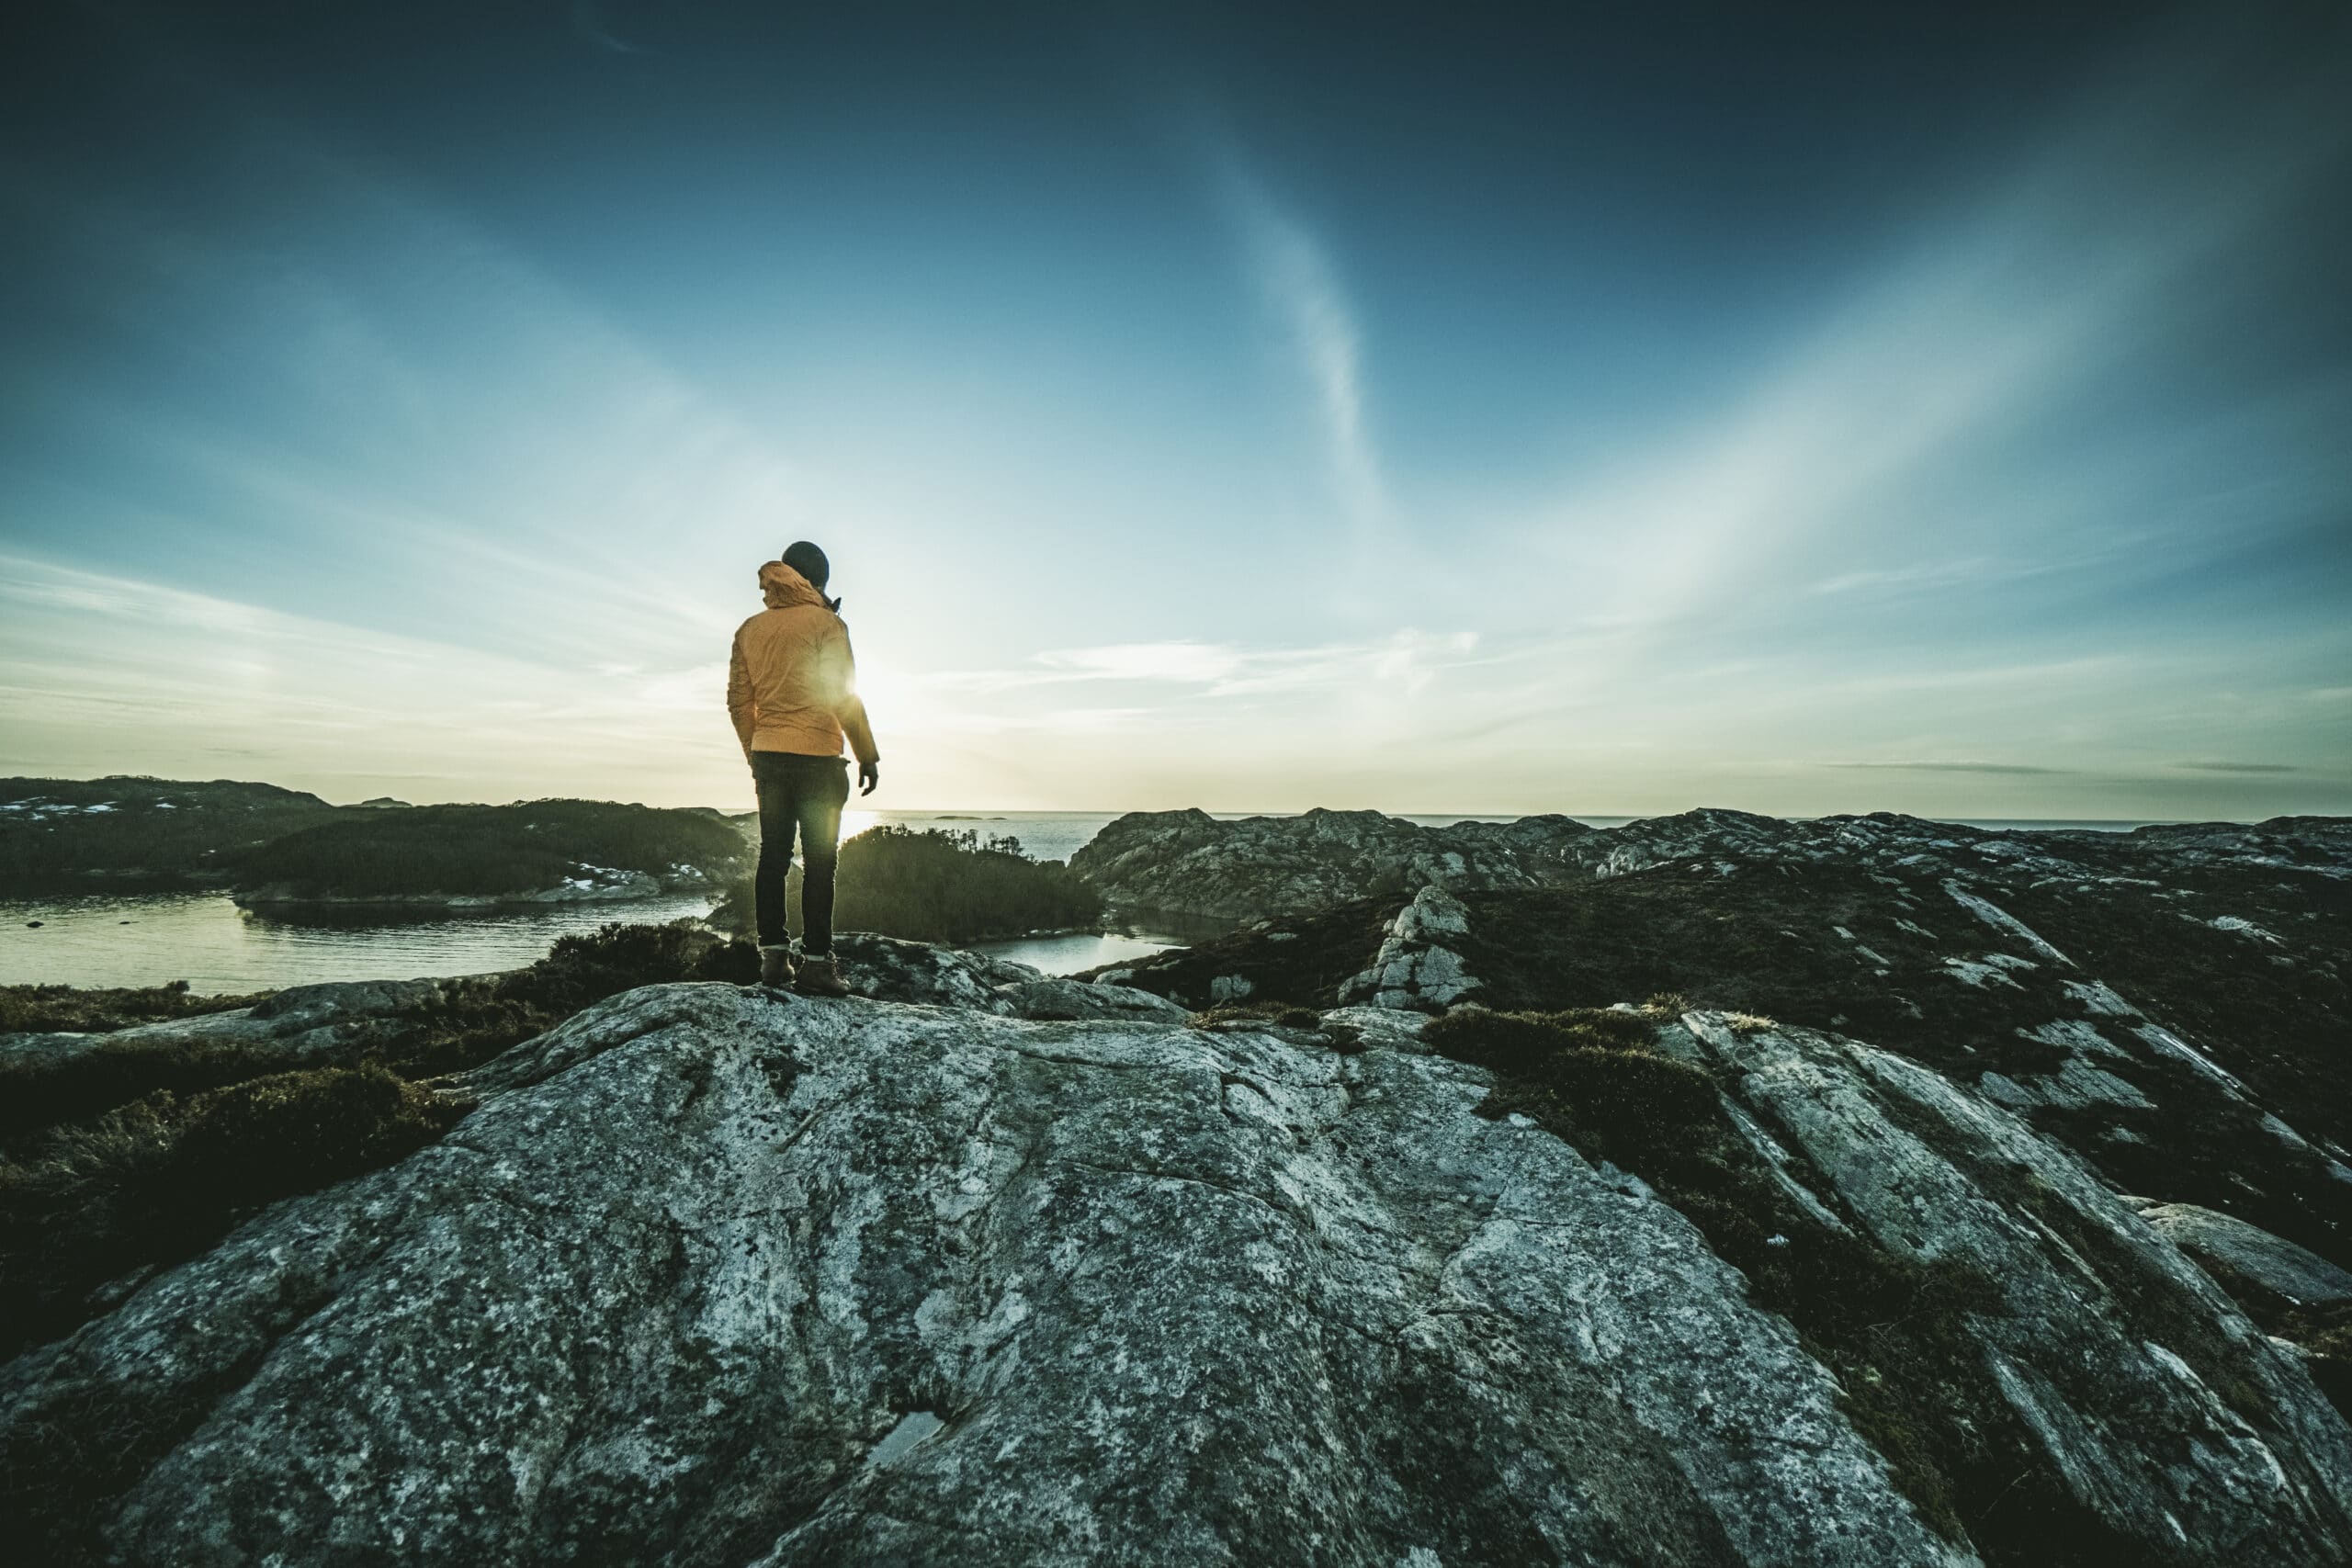 Mann som står og ser ut over et fjordlandskap.